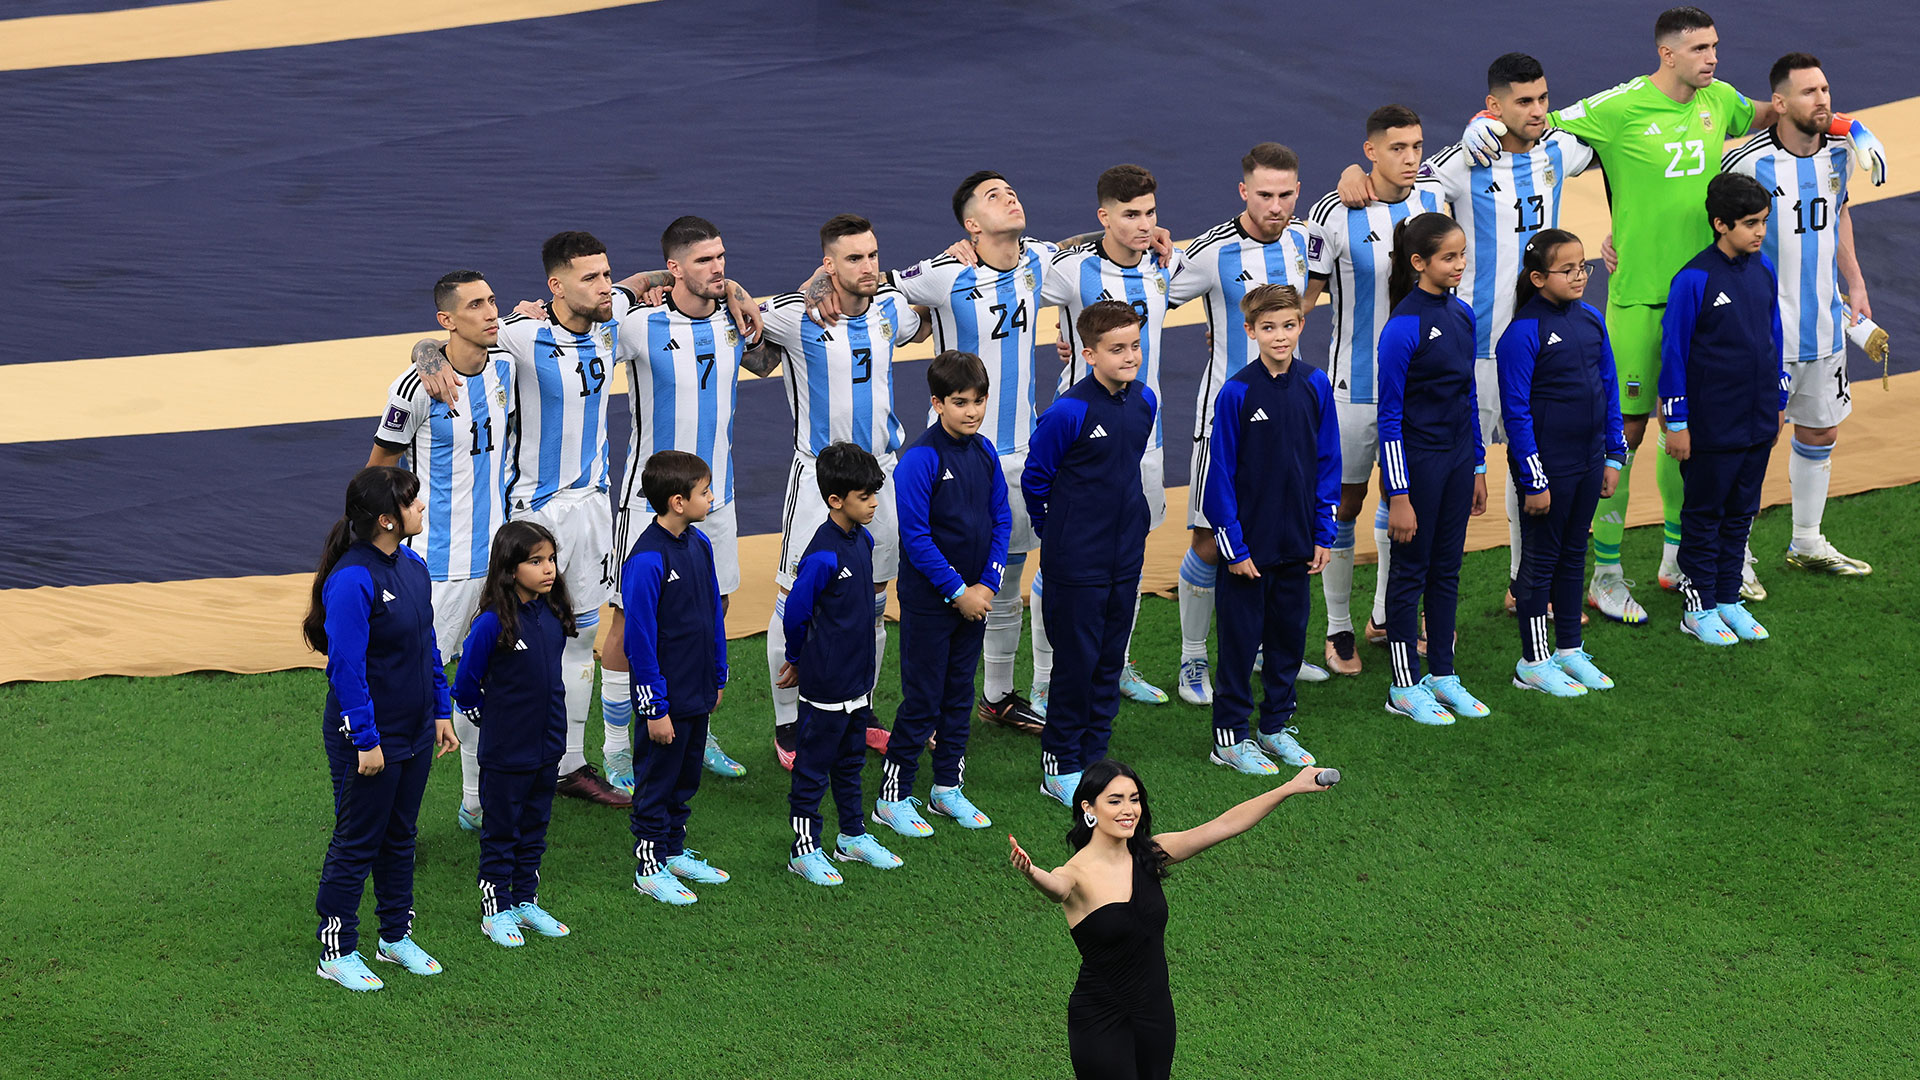 La elegida: Lali fue la cantante argentina que cantó el Himno Nacional minutos antes de salir campeones (Getty Images)